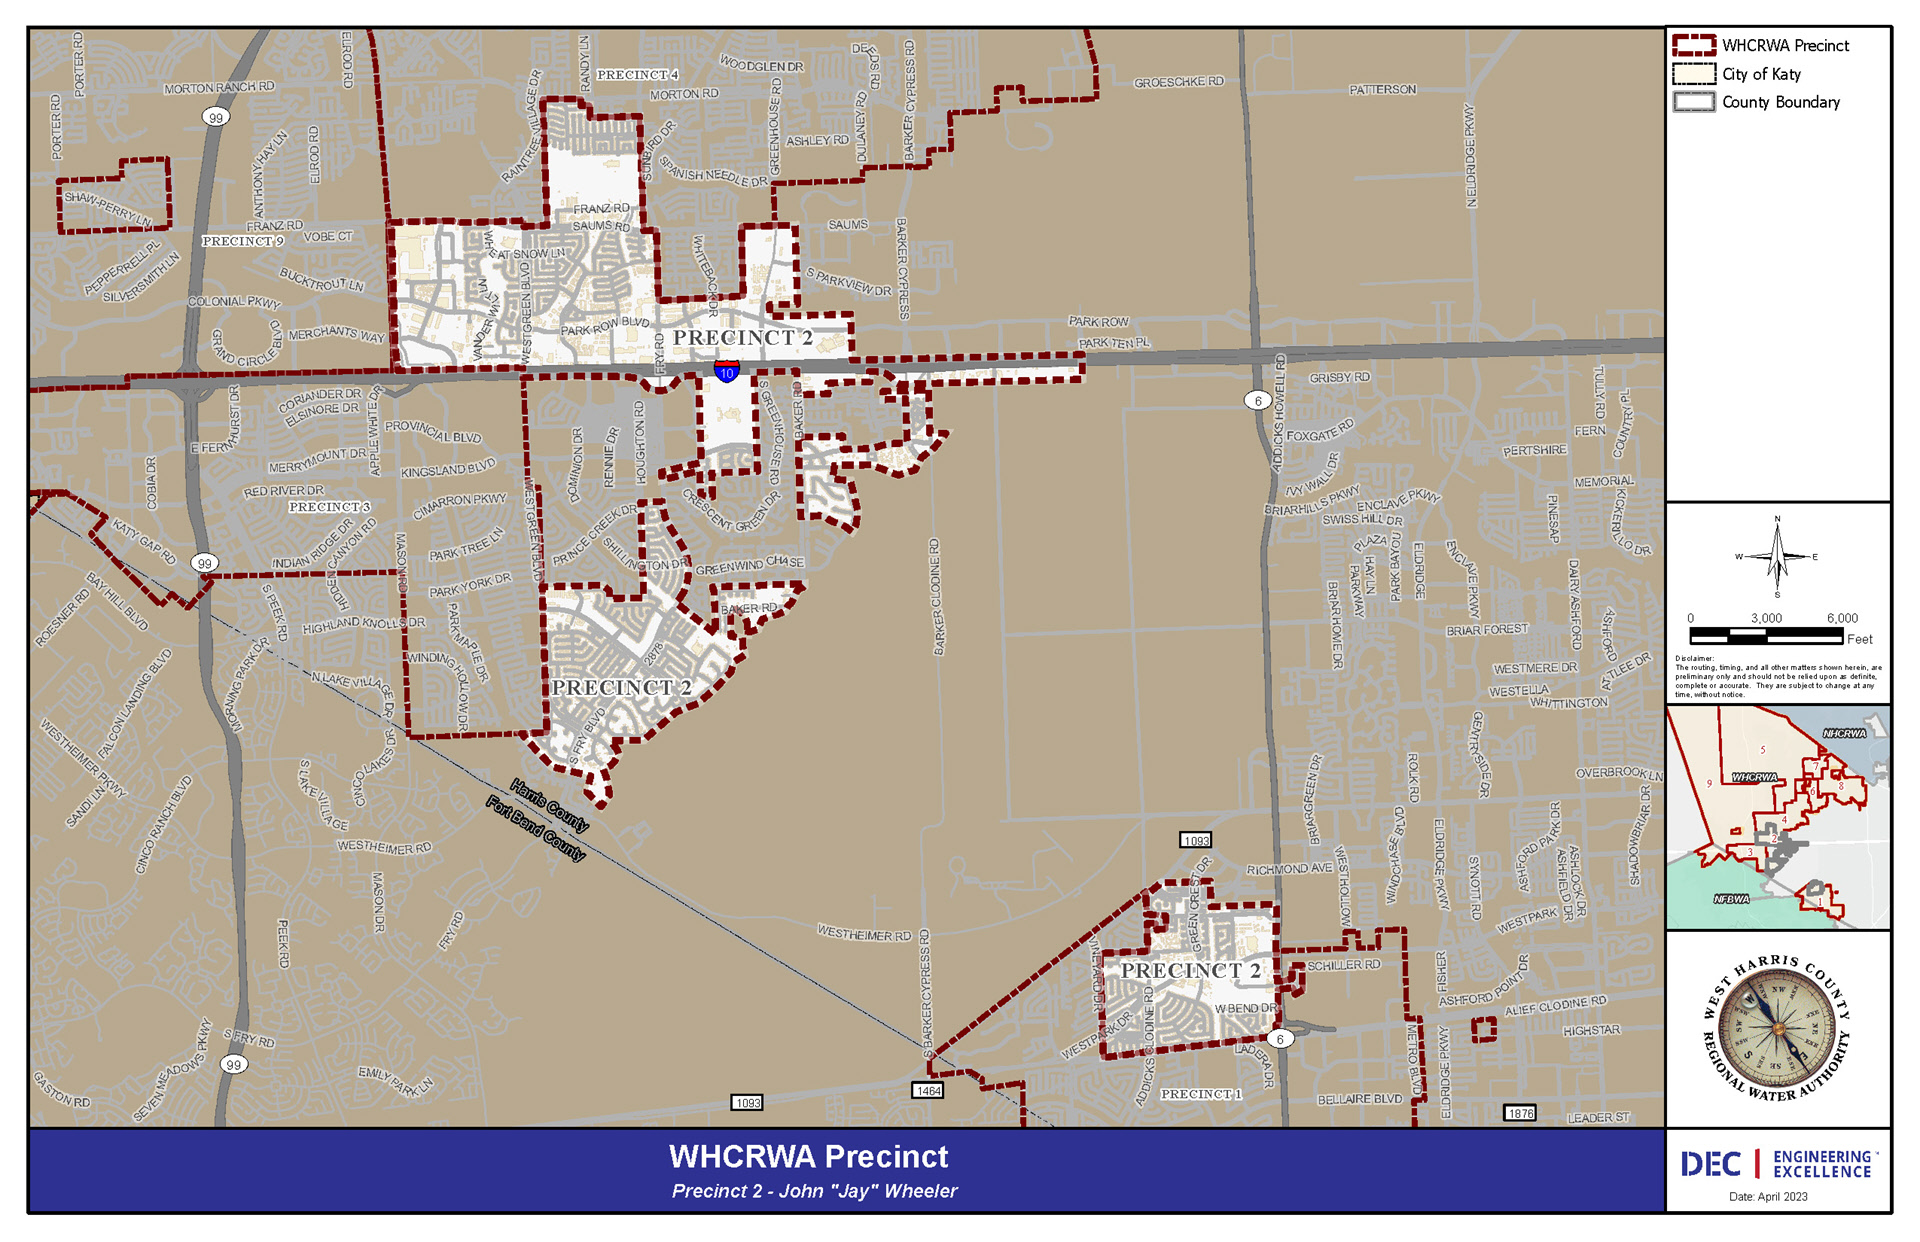 WHCRWA Precinct 2 Map